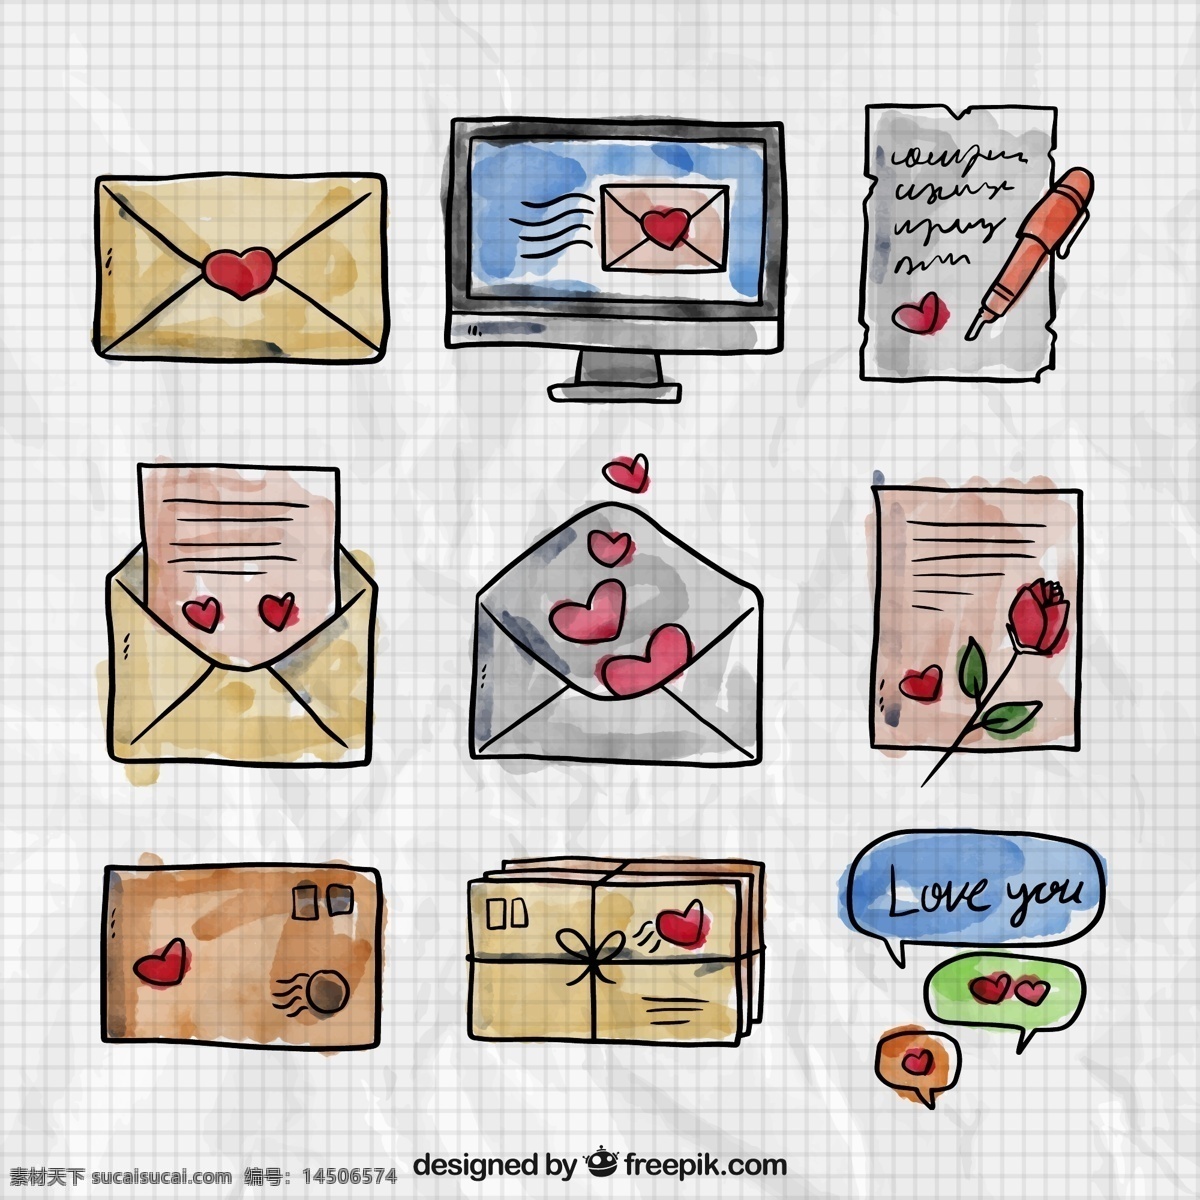 款 水彩 绘 情人节 书信 矢量 爱心 情书 电脑 玫瑰花 笔 信纸 格子 纸张 信封 语言气泡 矢量图 水彩画 彩绘 情人节素材